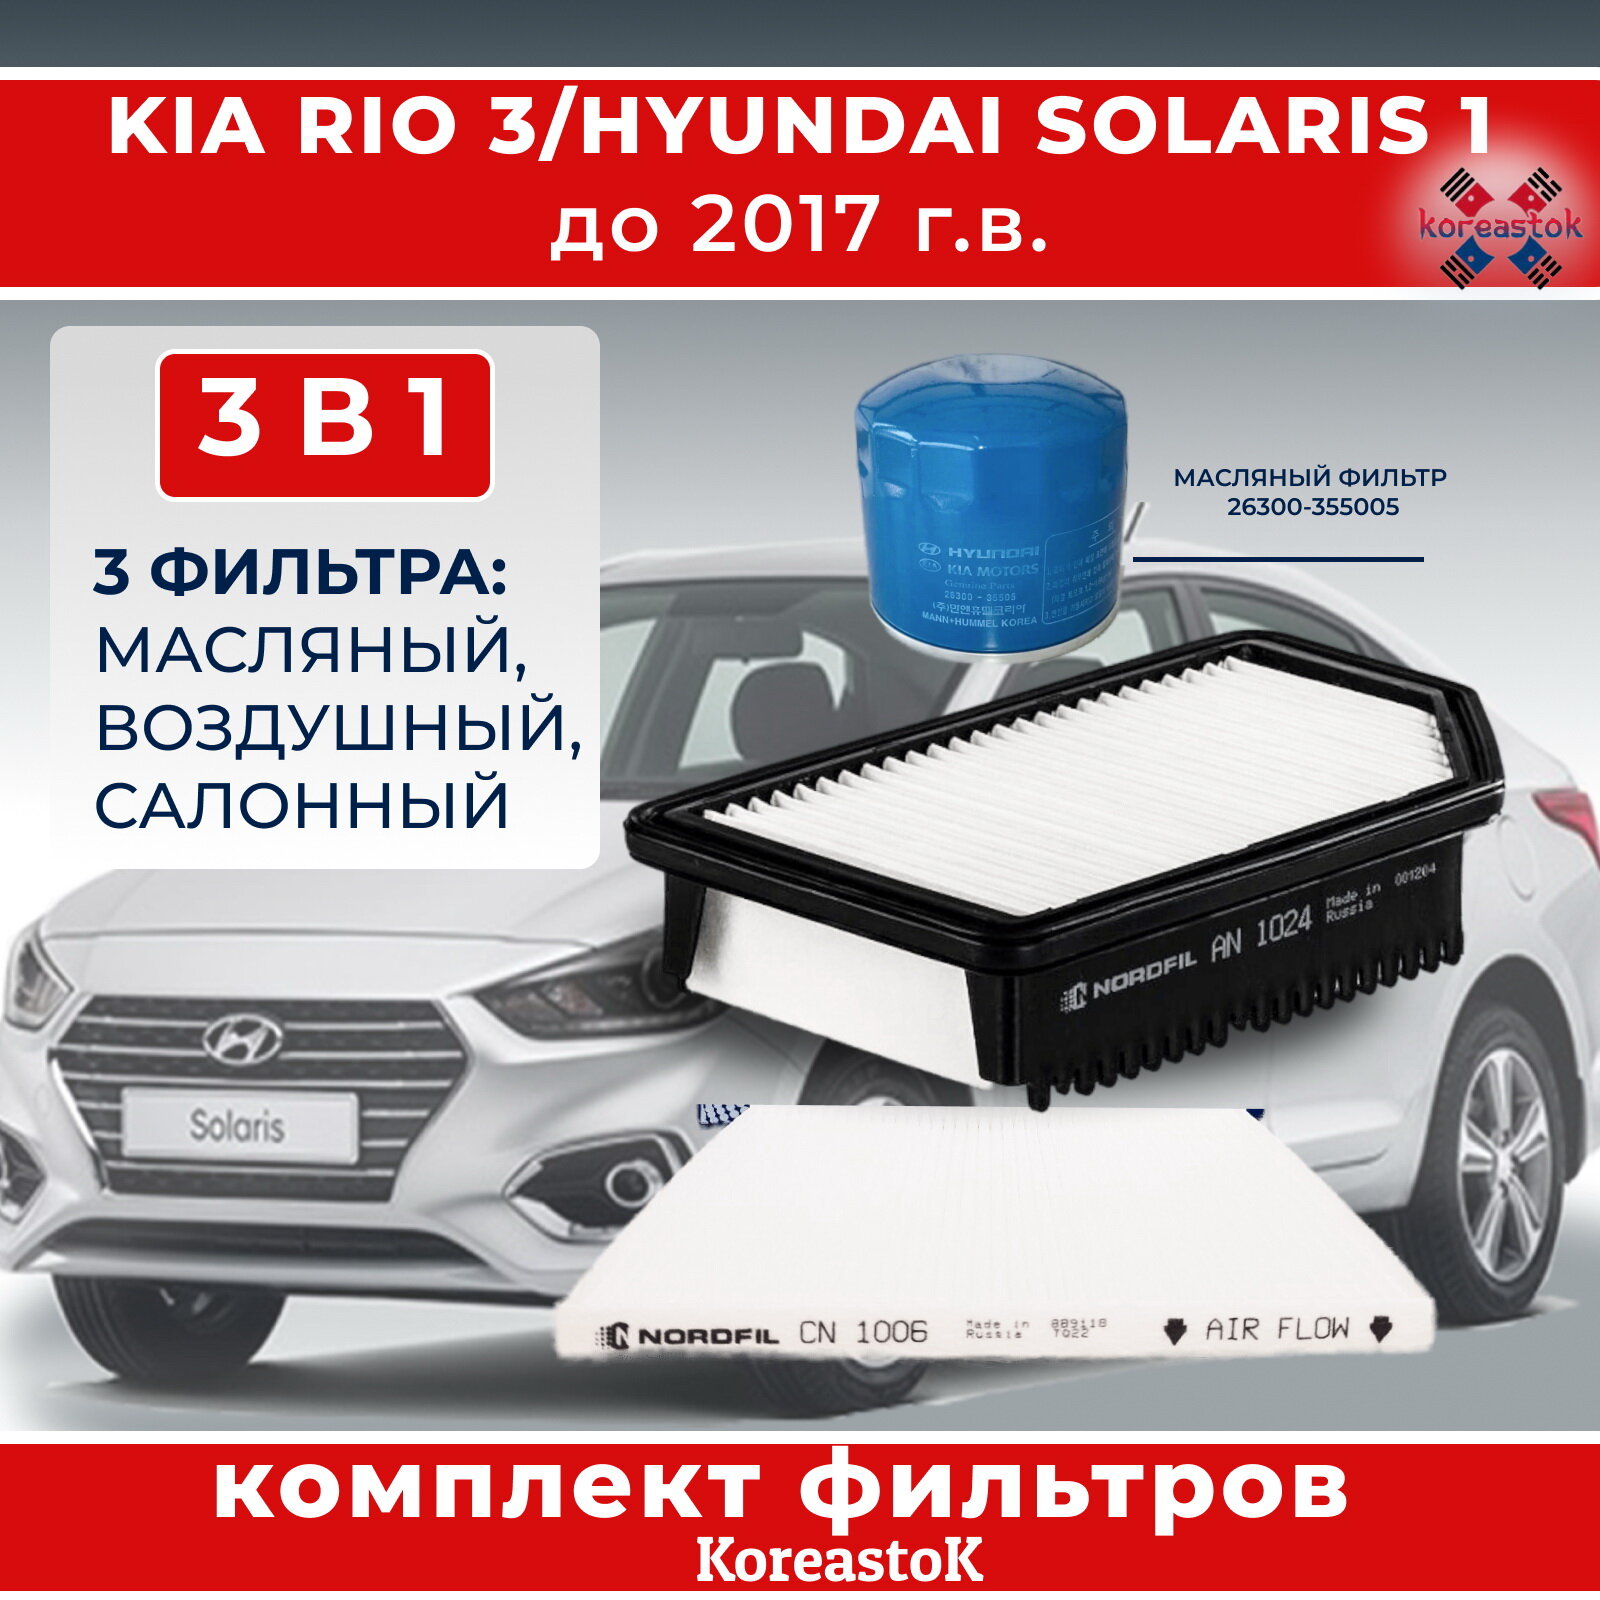 Набор из 3-х фильтров для KIA Rio 3 , Hyunday Solaris 1 до 2017 г. Фильтры масляный ориг., воздушный, салонный .